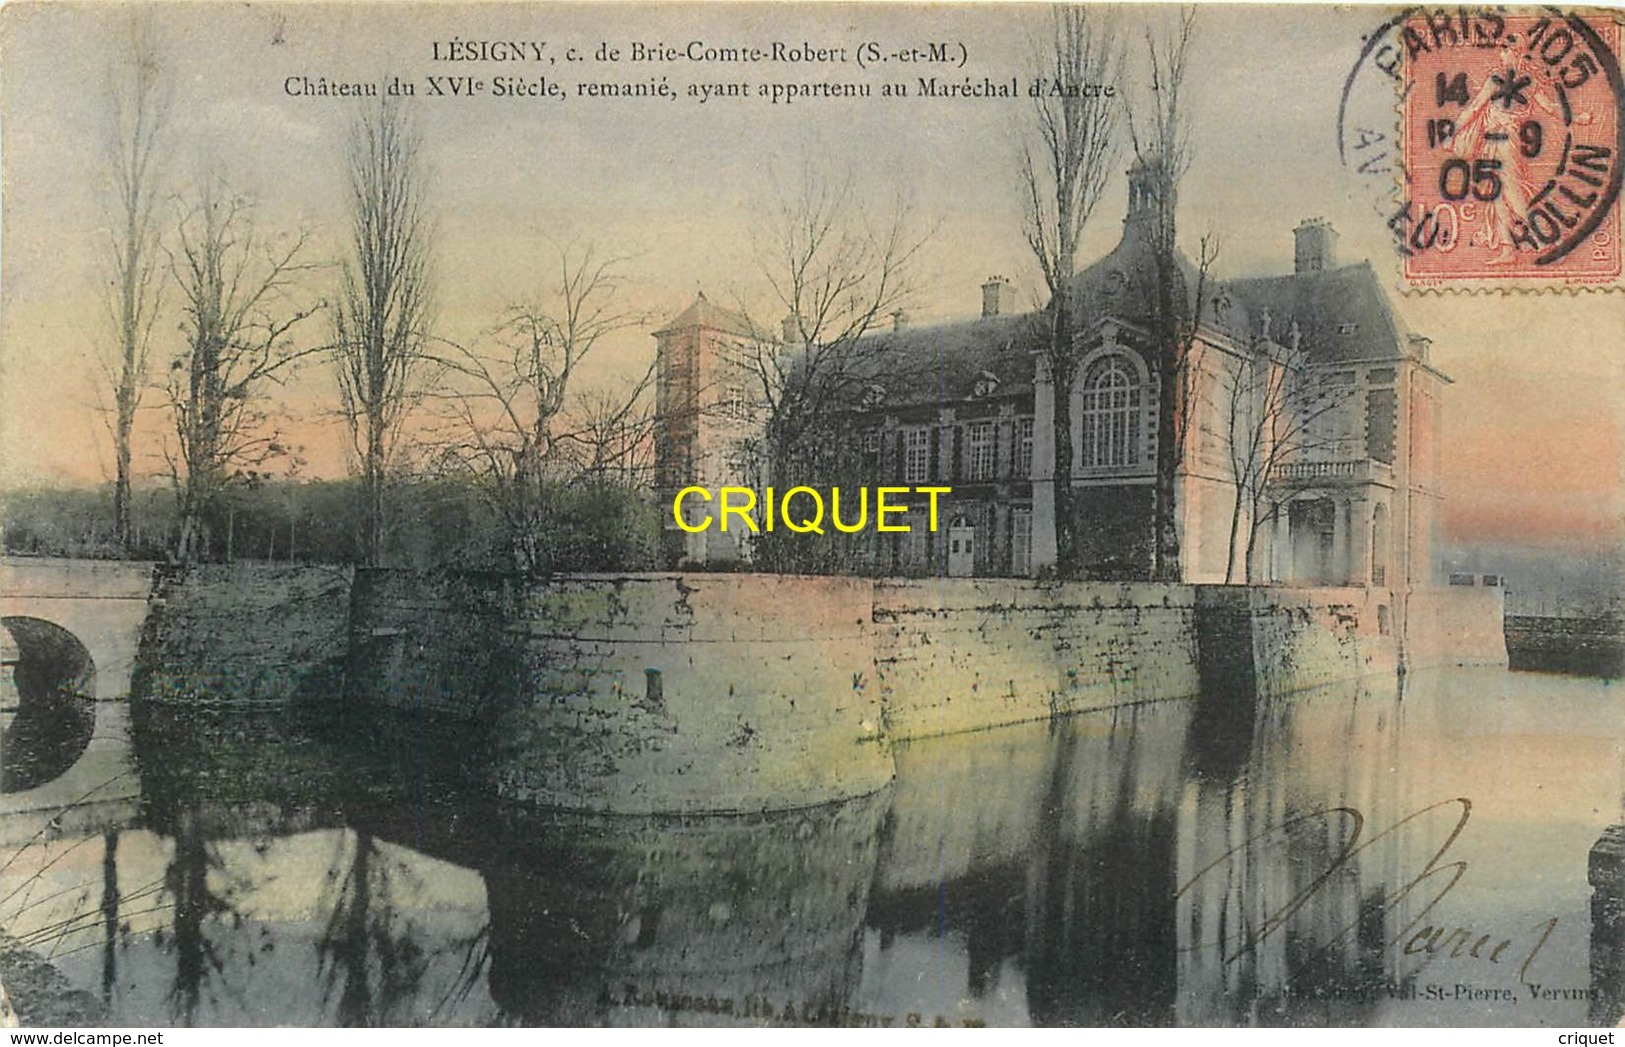 77 Lesigny, Chateau Remanié Ayant Appartenu Au Maréchal D'Ancre, Carte Colorisée 1905 - Lesigny